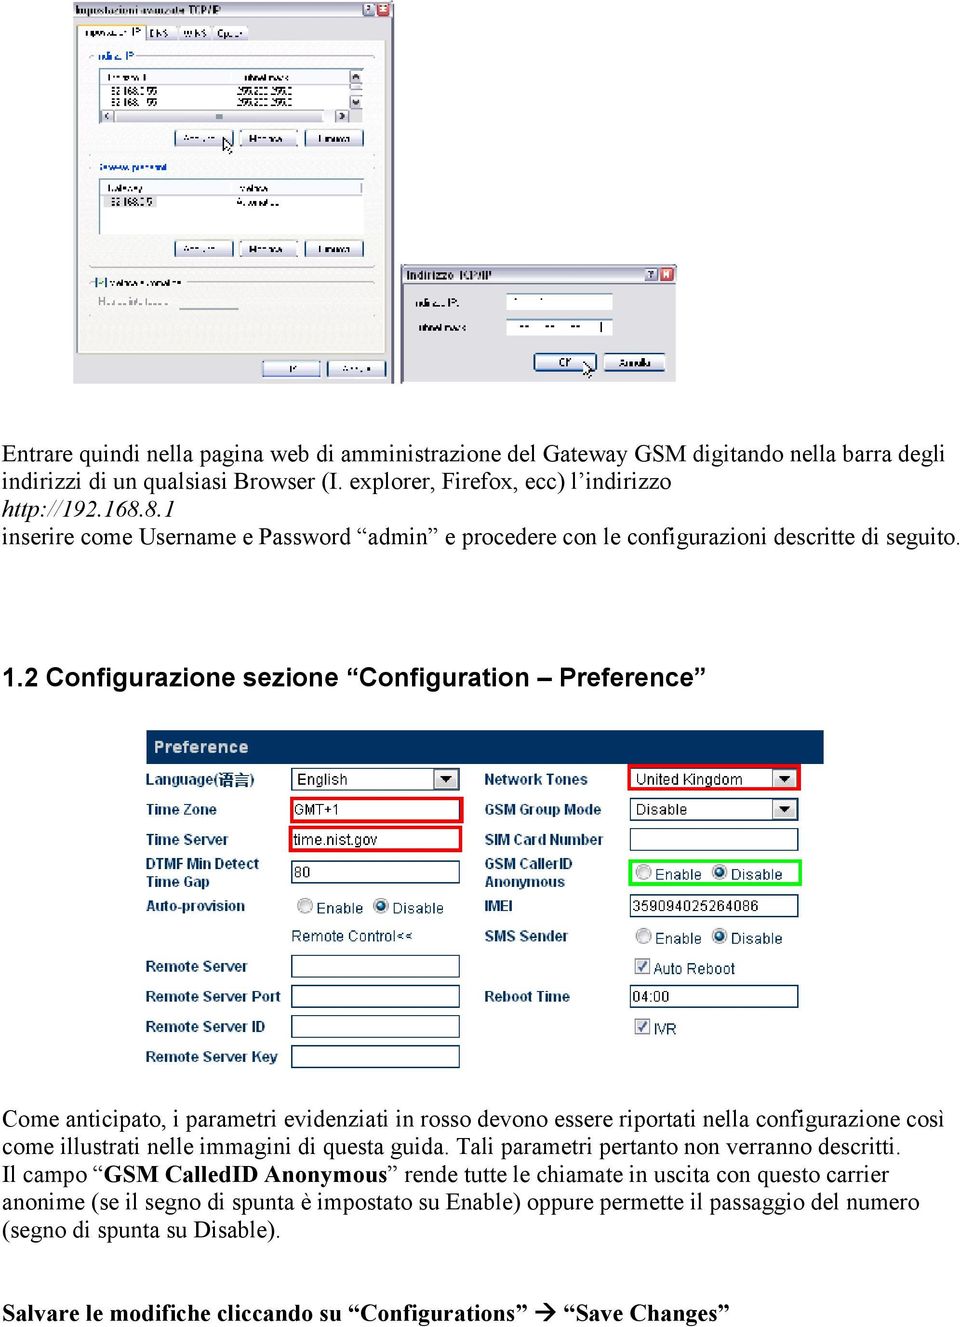 2 Configurazione sezione Configuration Preference Come anticipato, i parametri evidenziati in rosso devono essere riportati nella configurazione così come illustrati nelle immagini di